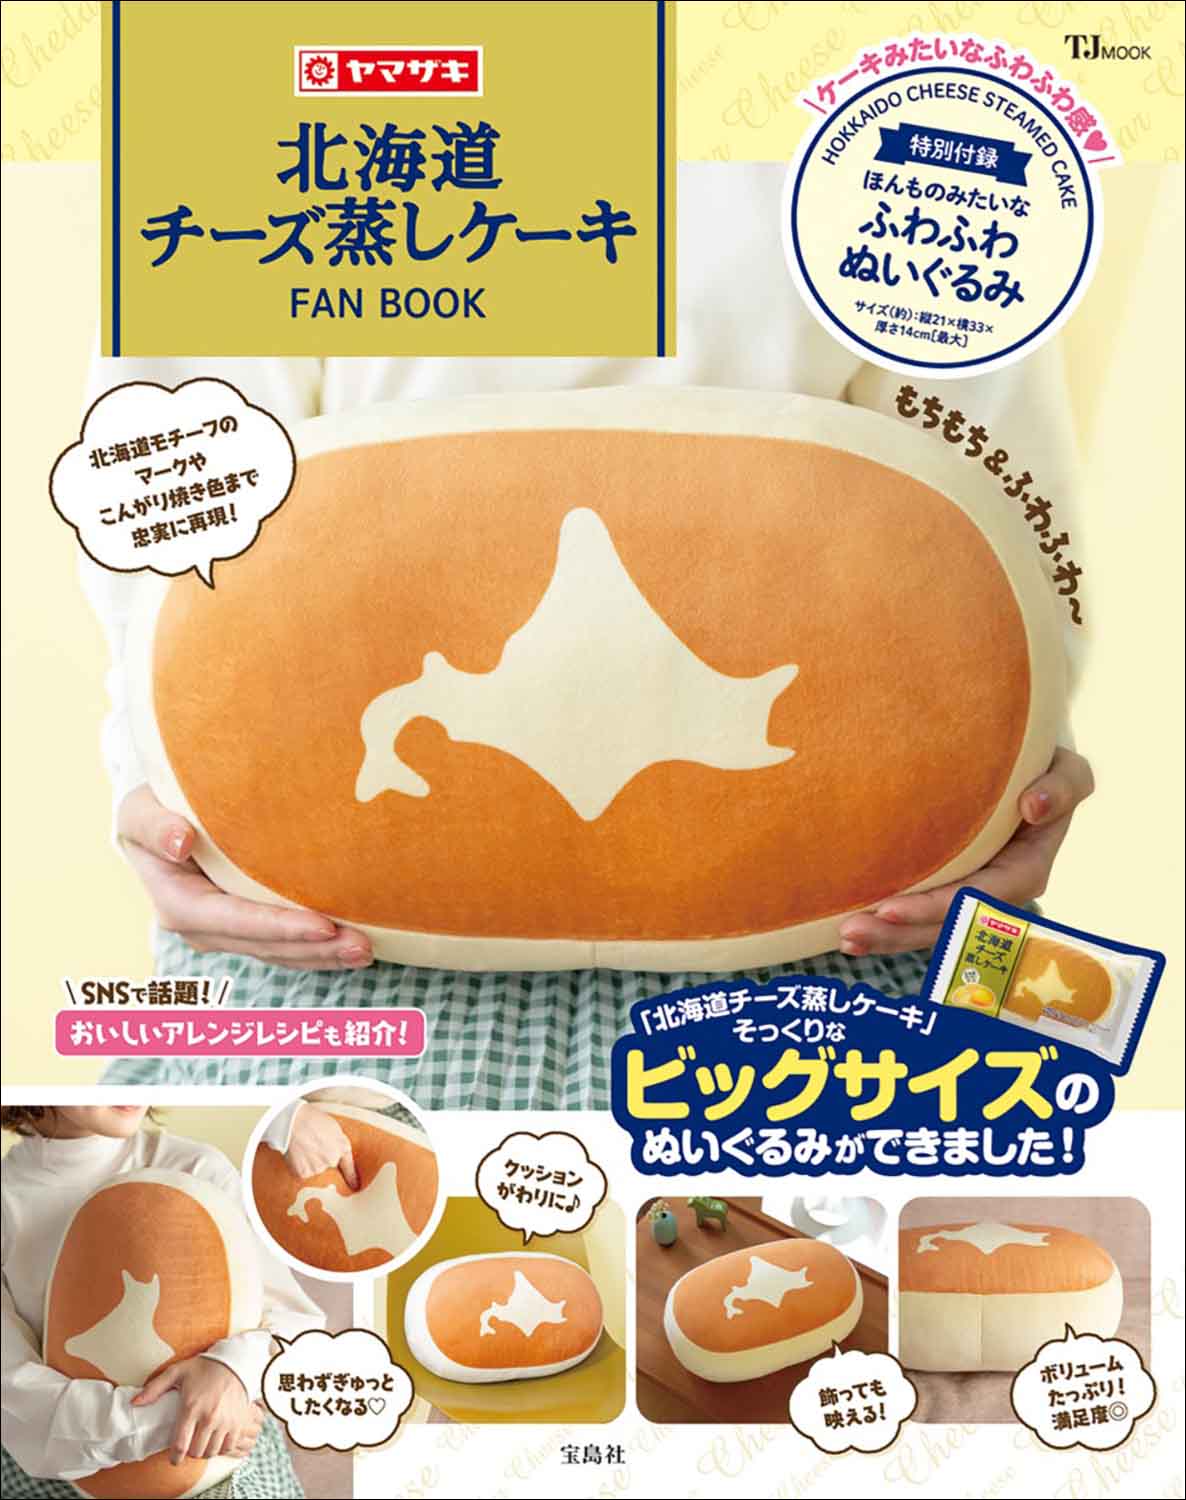 『北海道チーズ蒸しケーキFAN BOOK』15万部突破の画像